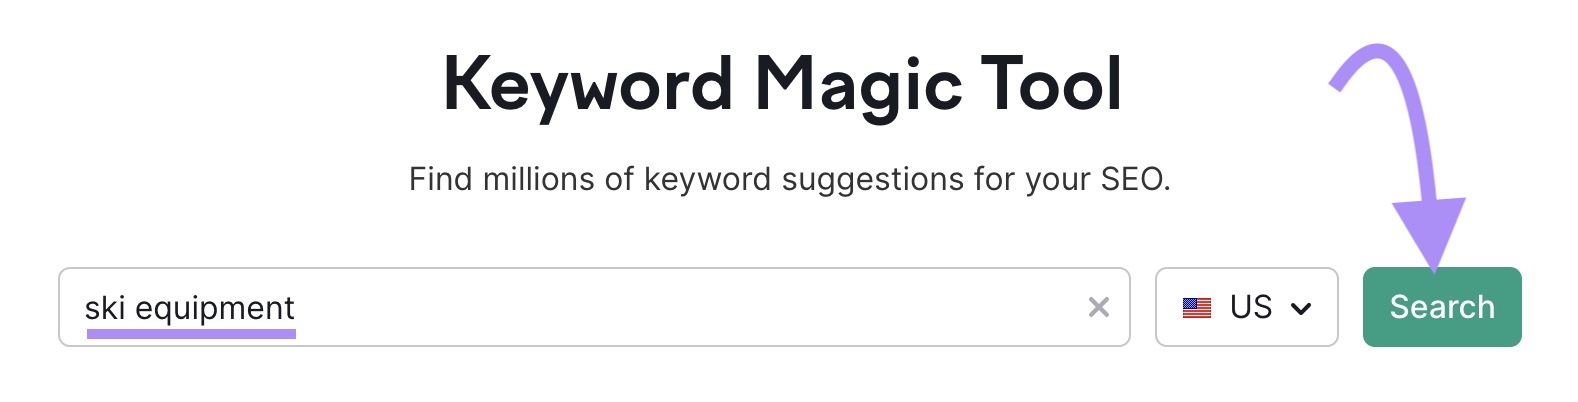 Search bar in Keyword Magic Tool.